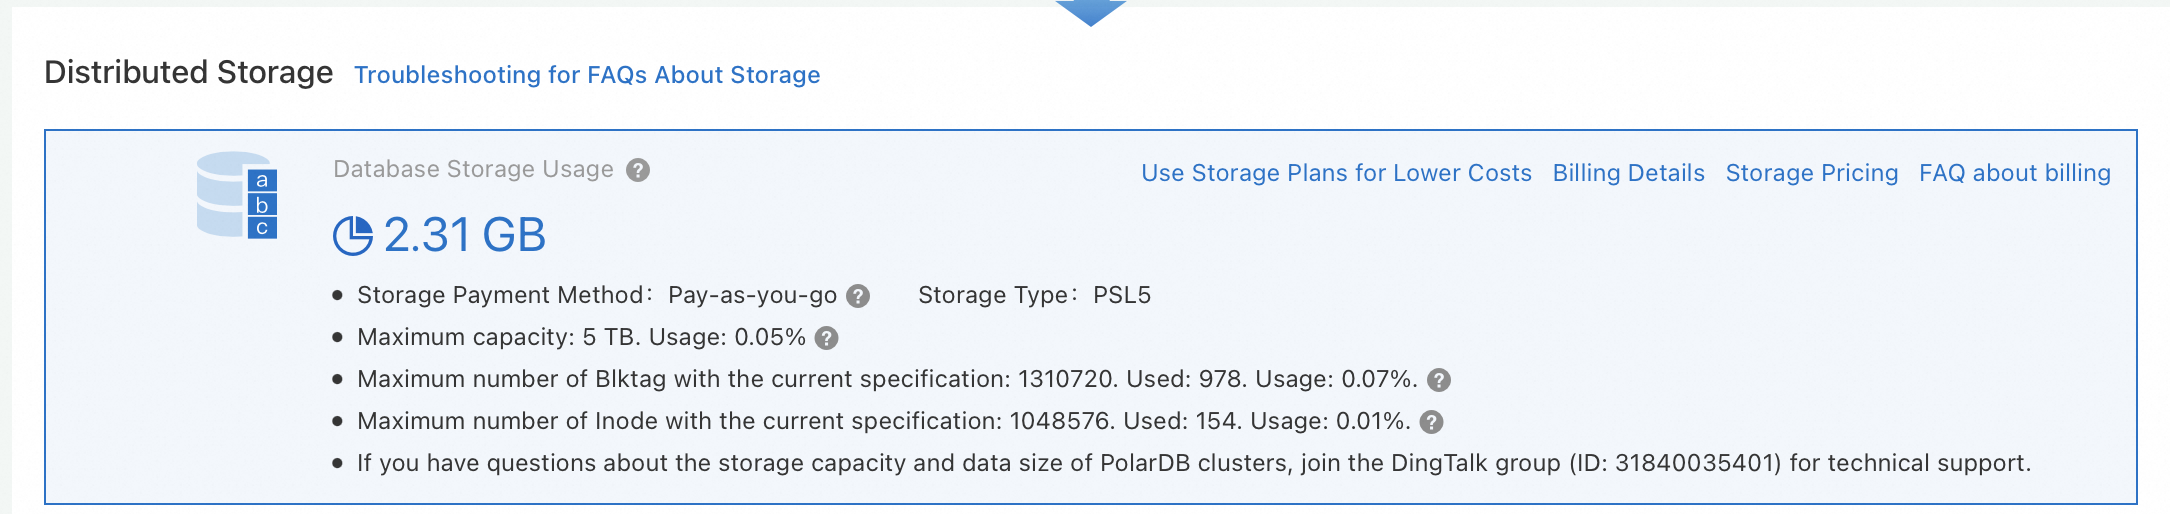 Database storage usage